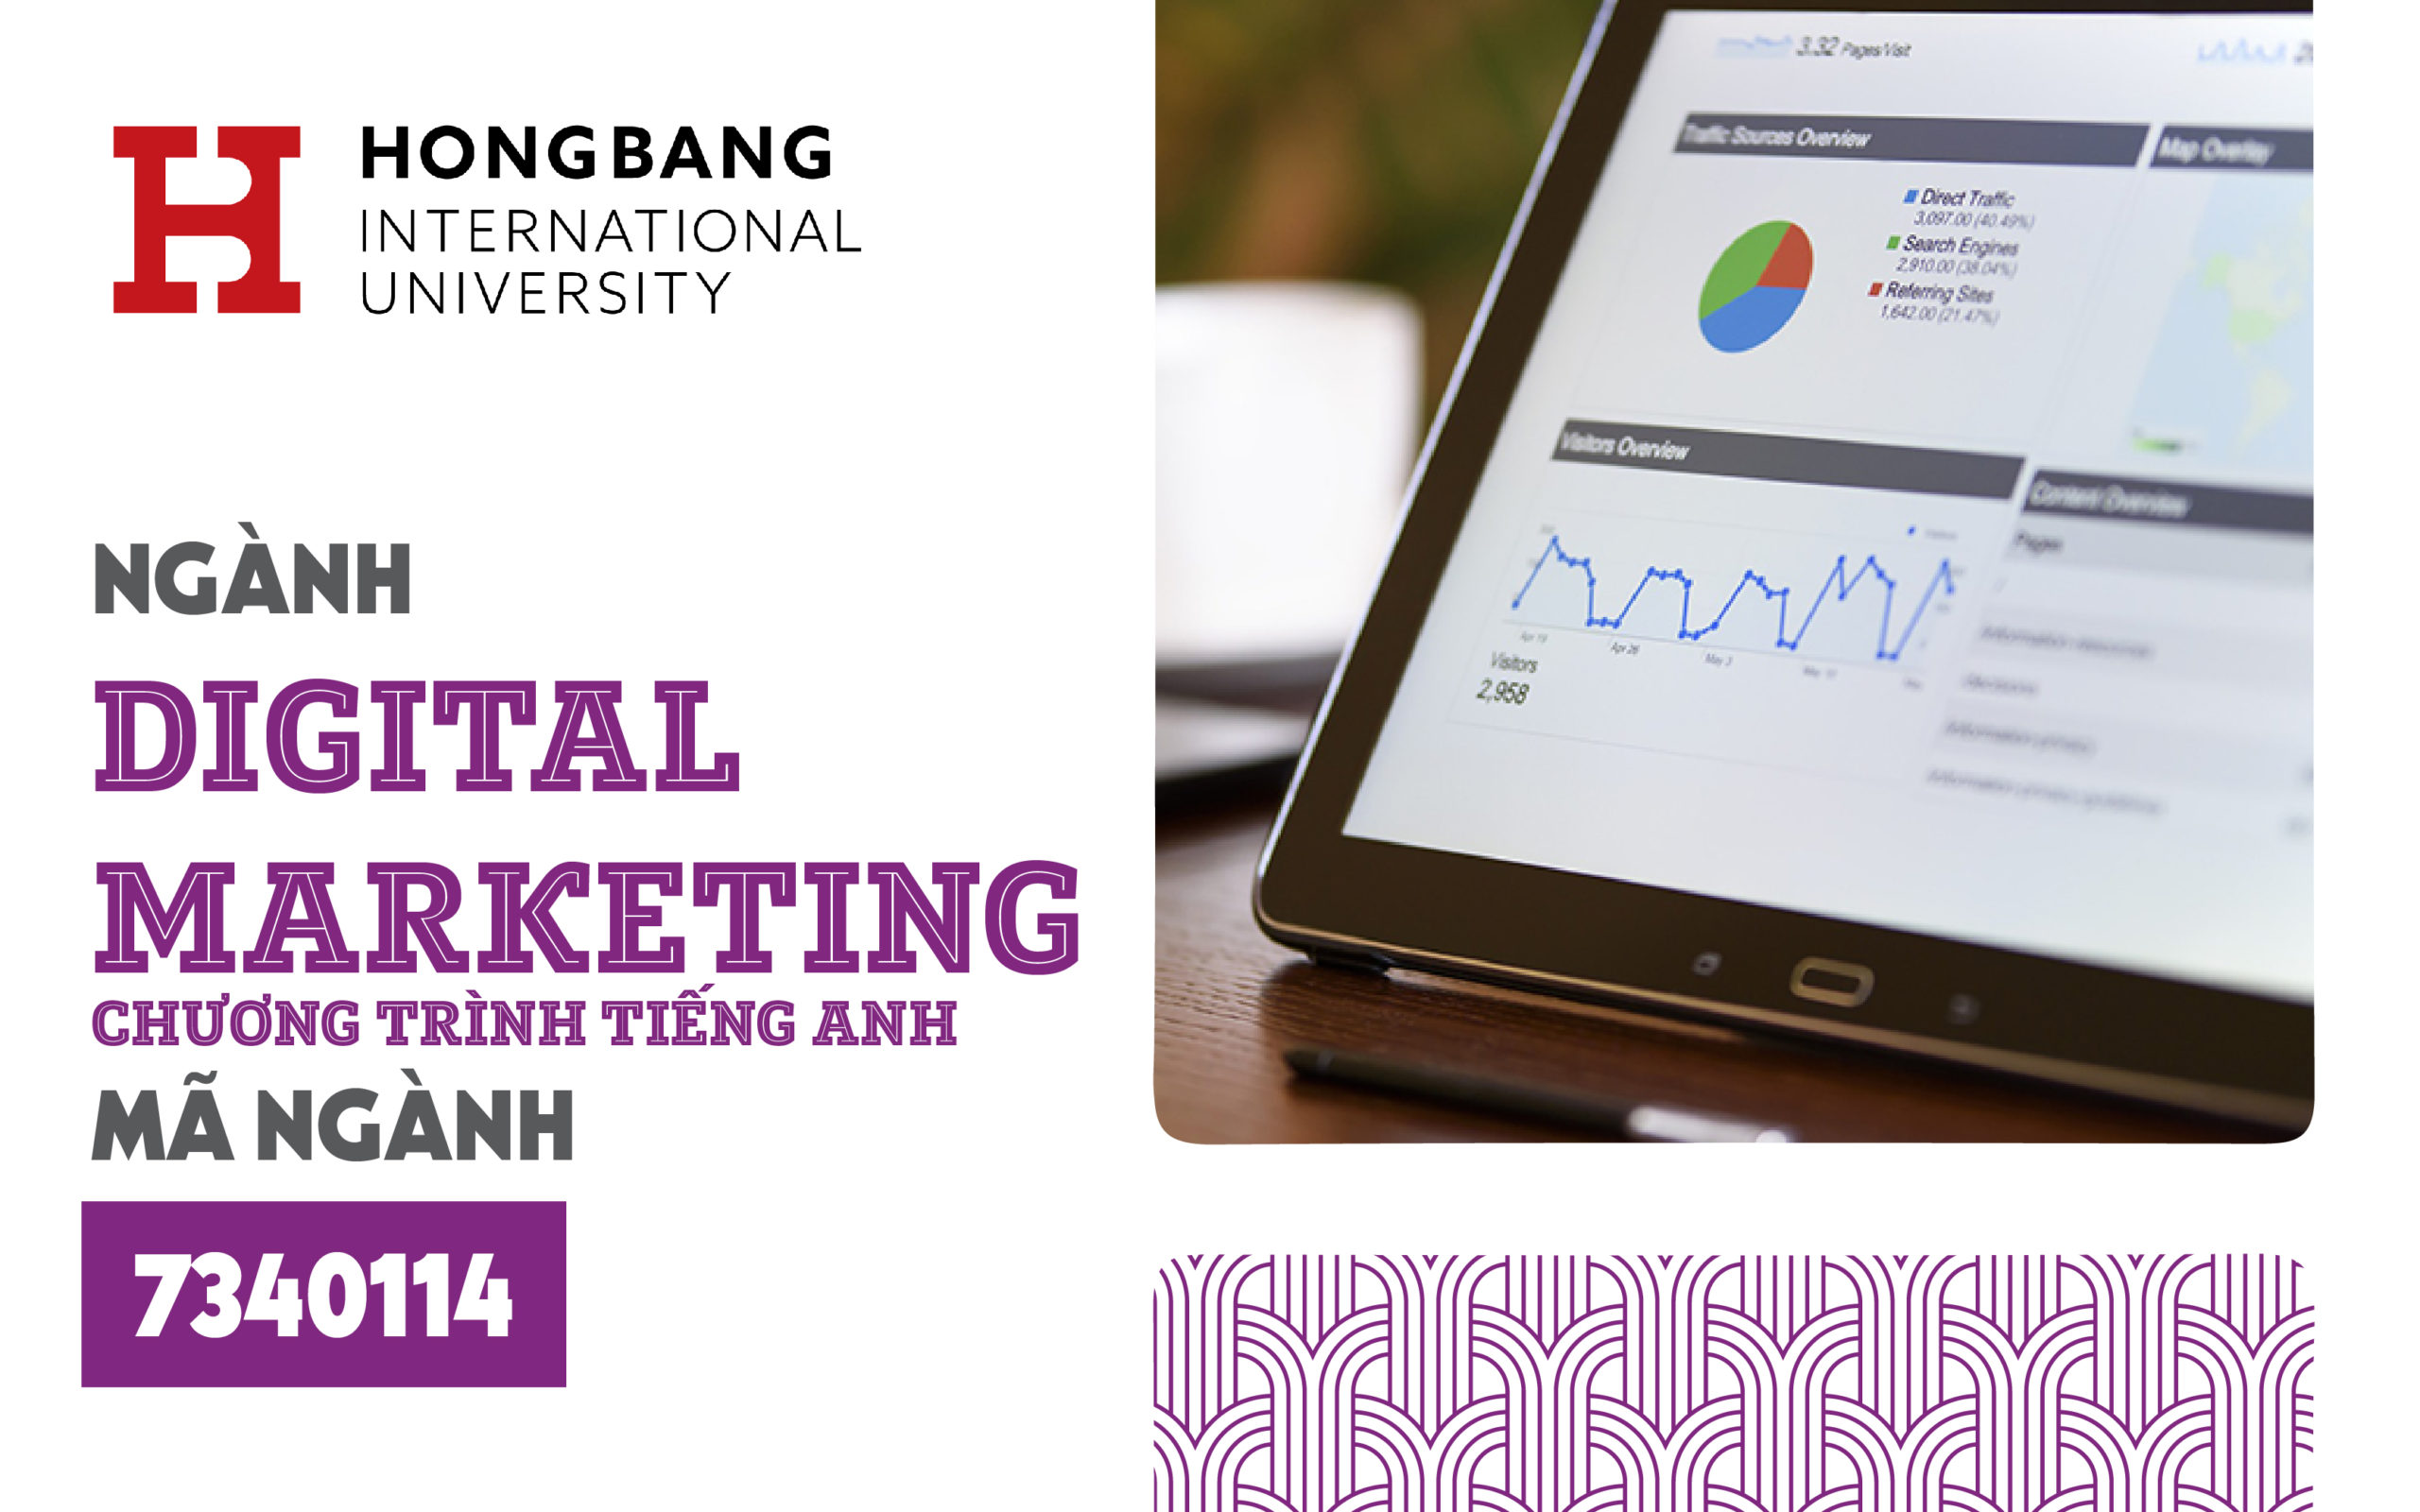 Digital Marketing chương trình tiếng Anh tại HIU – Xu hướng và cơ hội nghề nghiệp